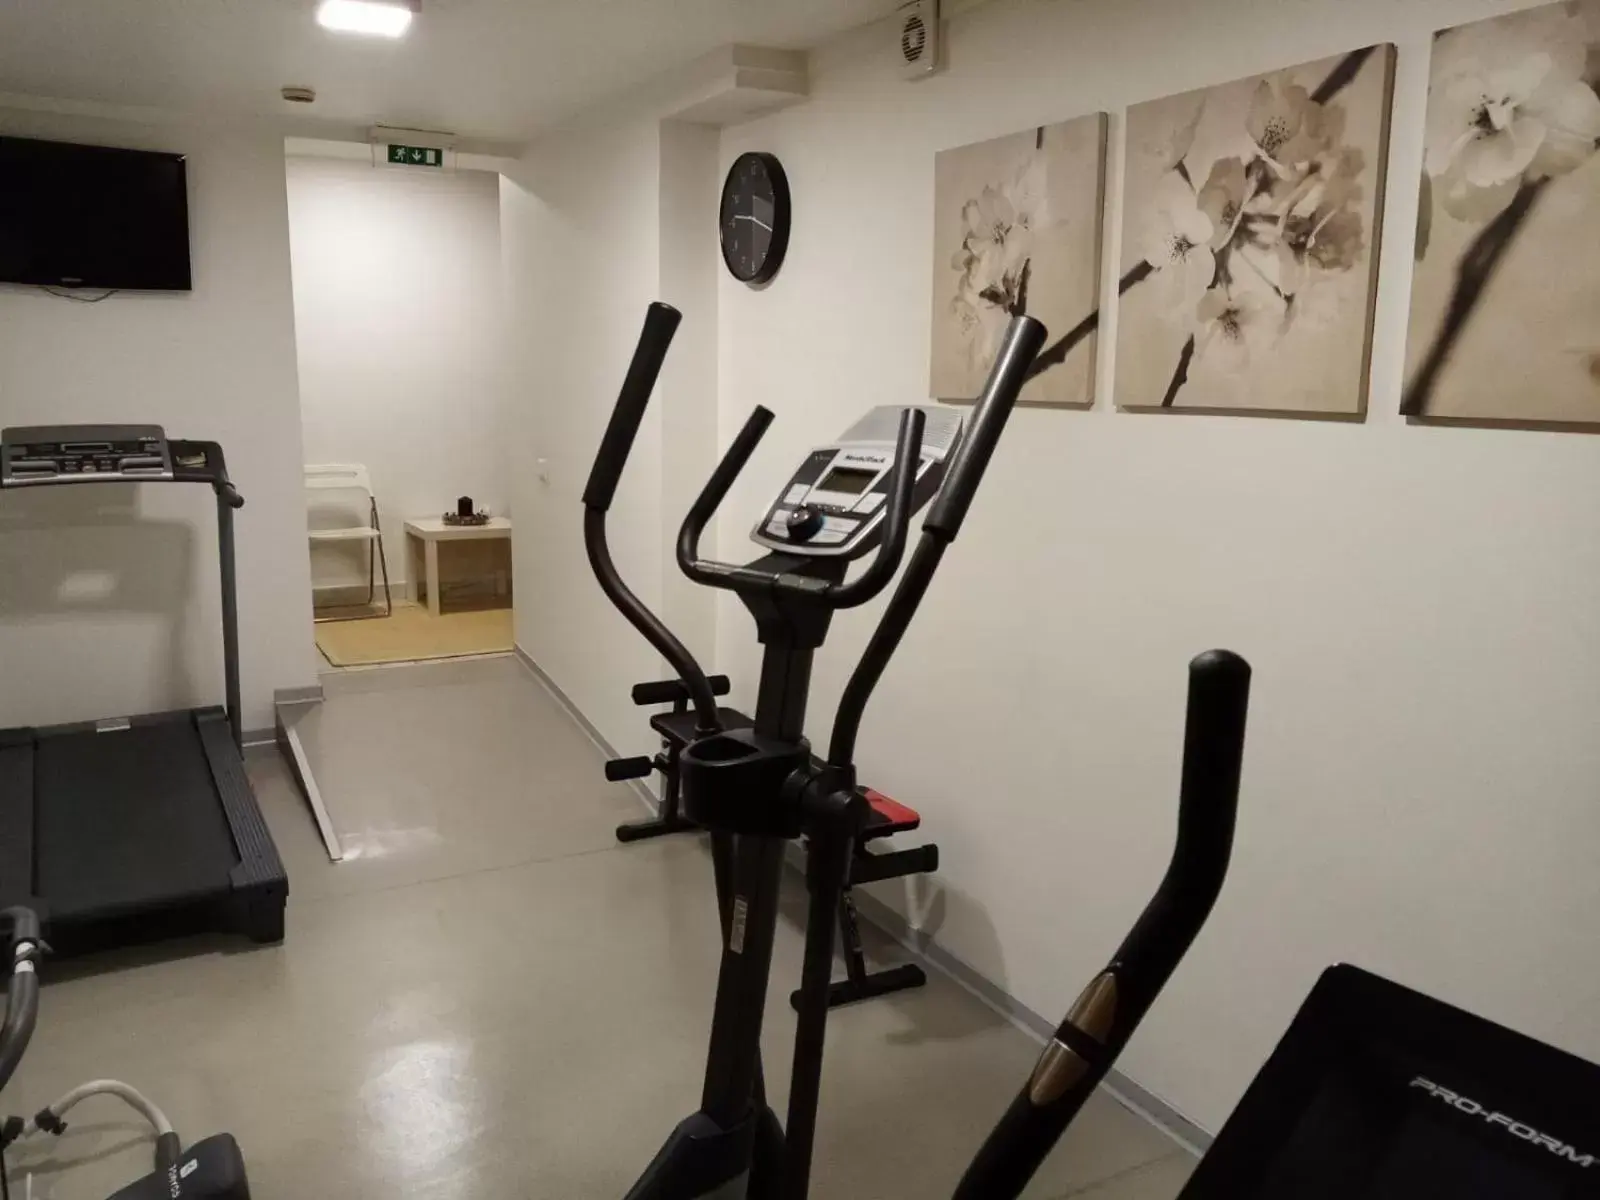 Fitness centre/facilities, Fitness Center/Facilities in Casual Inca Porto